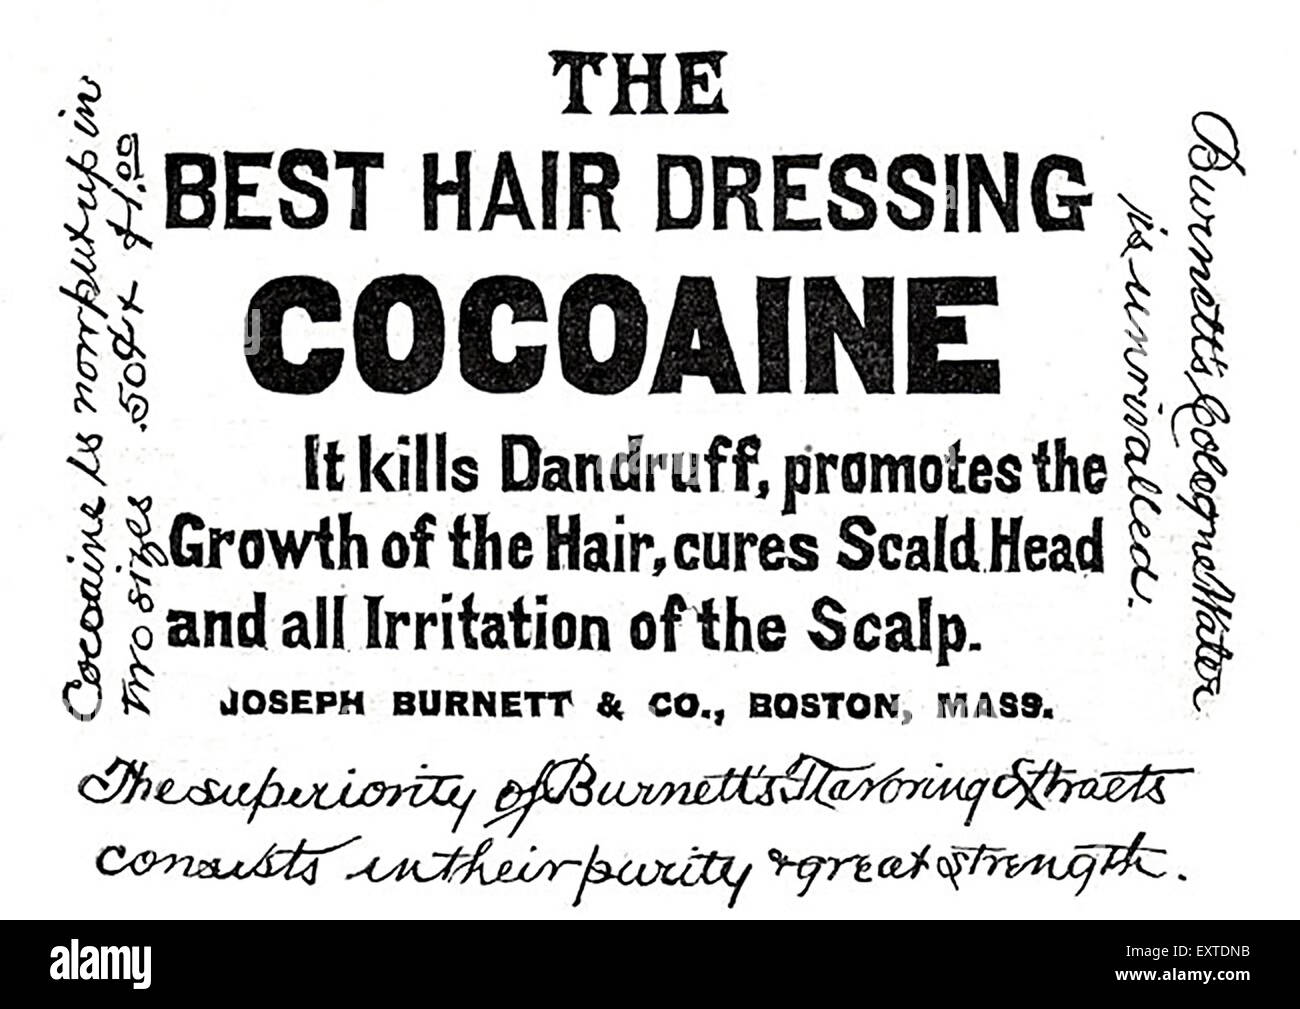 1890er Jahren USA Burnett Cocoaine Magazin Anzeige Stockfoto